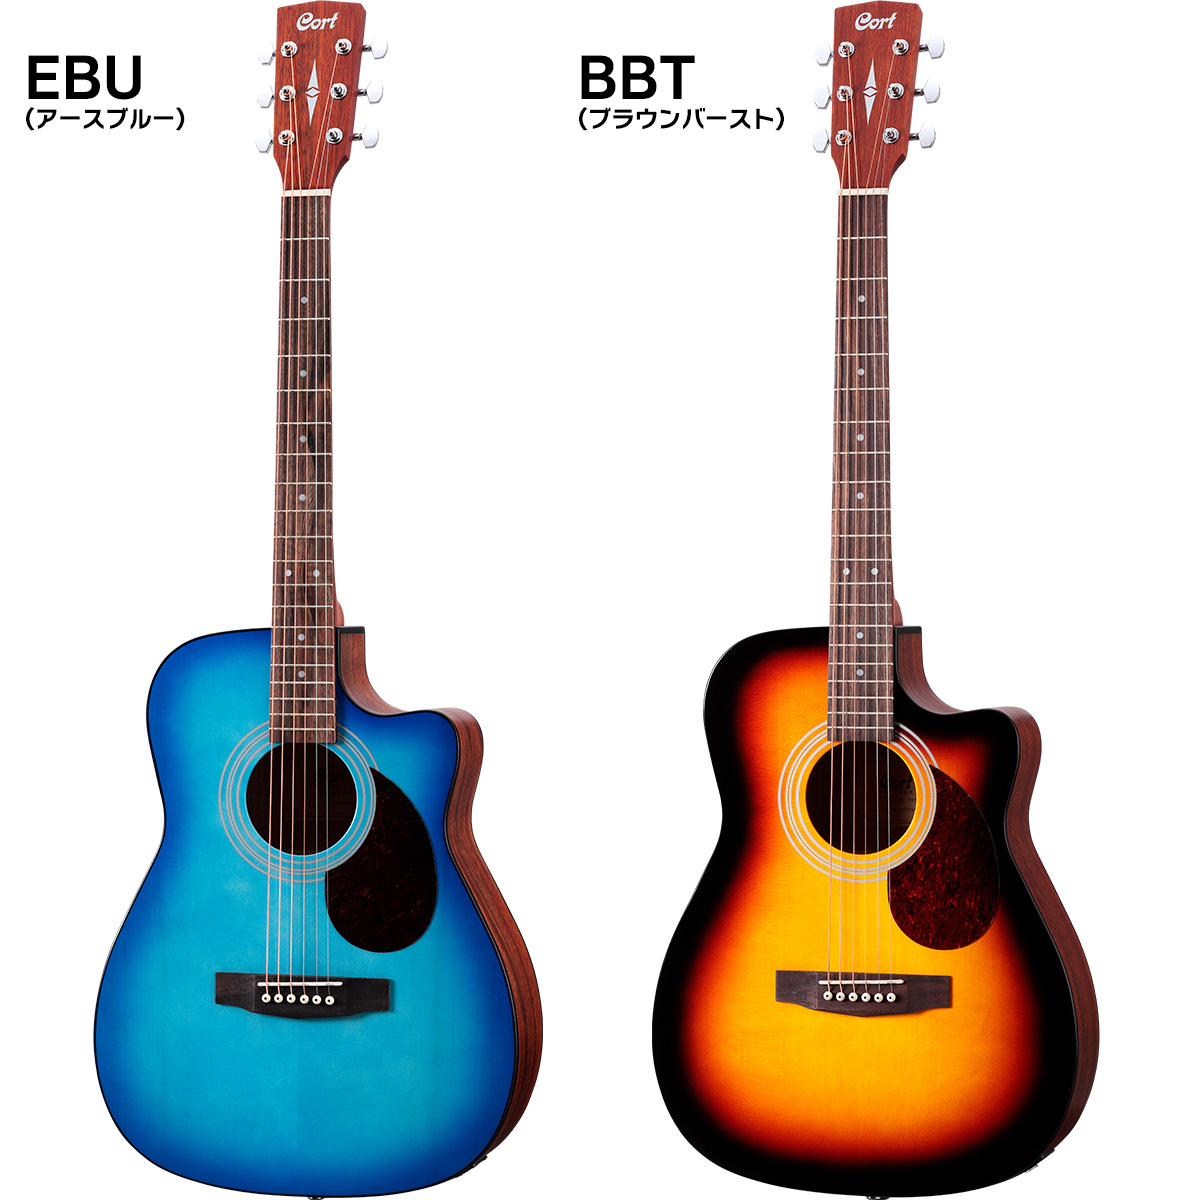 選べる4色アコースティックギター カッタウェイタイプ (ブラック